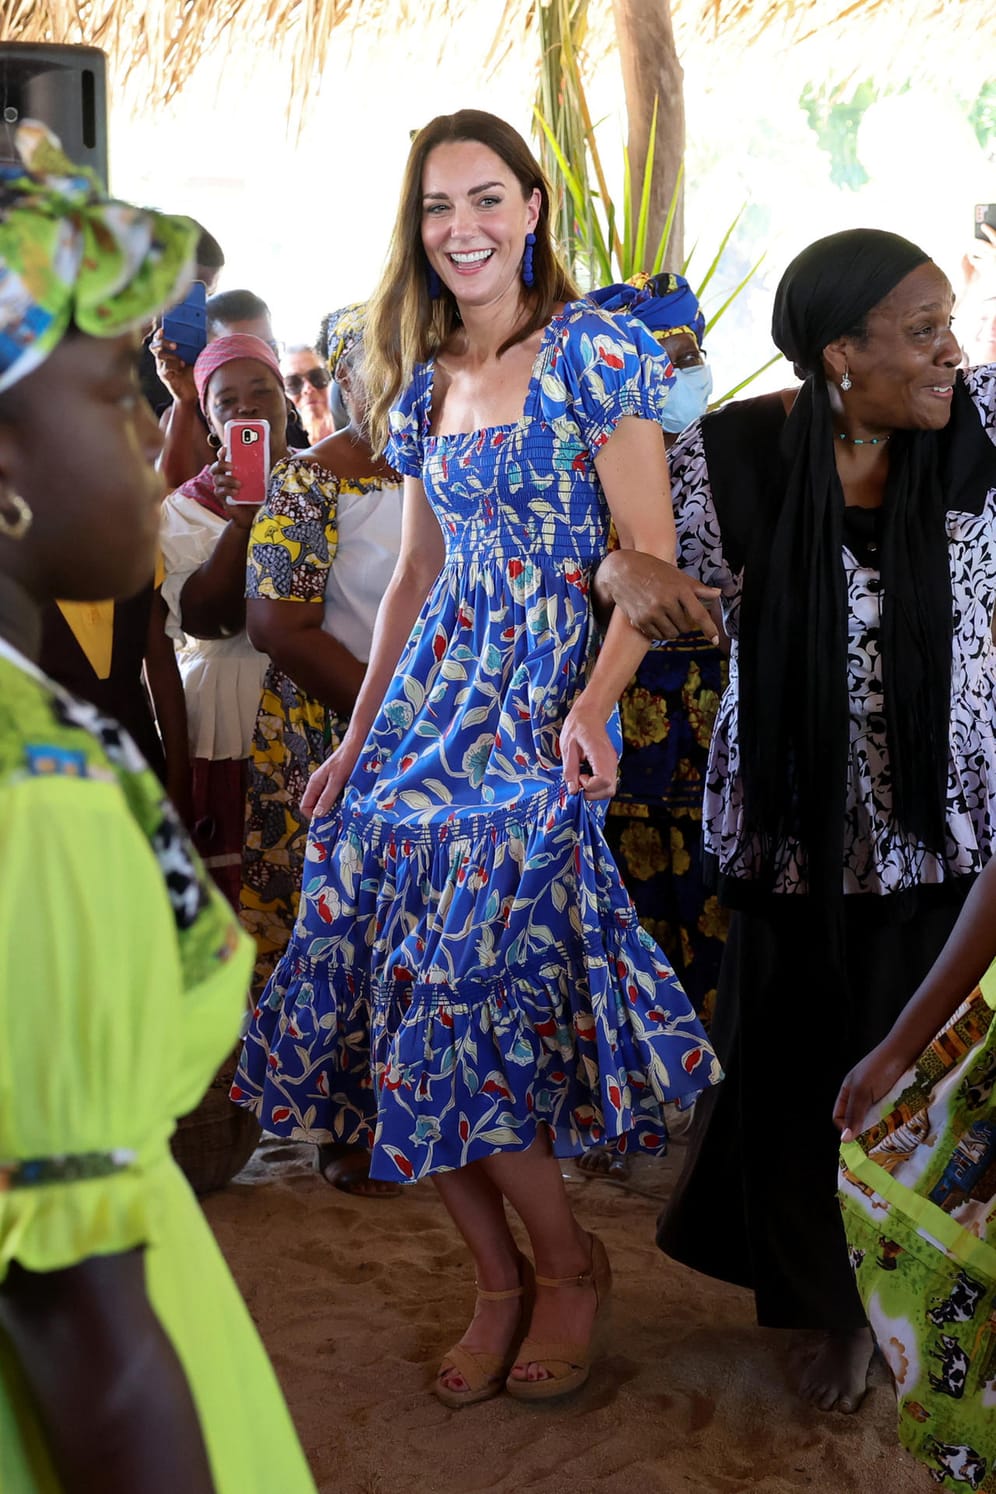 Tag zwei: Herzogin Kate schwingt mit einer Frauengruppe das Tanzbein.